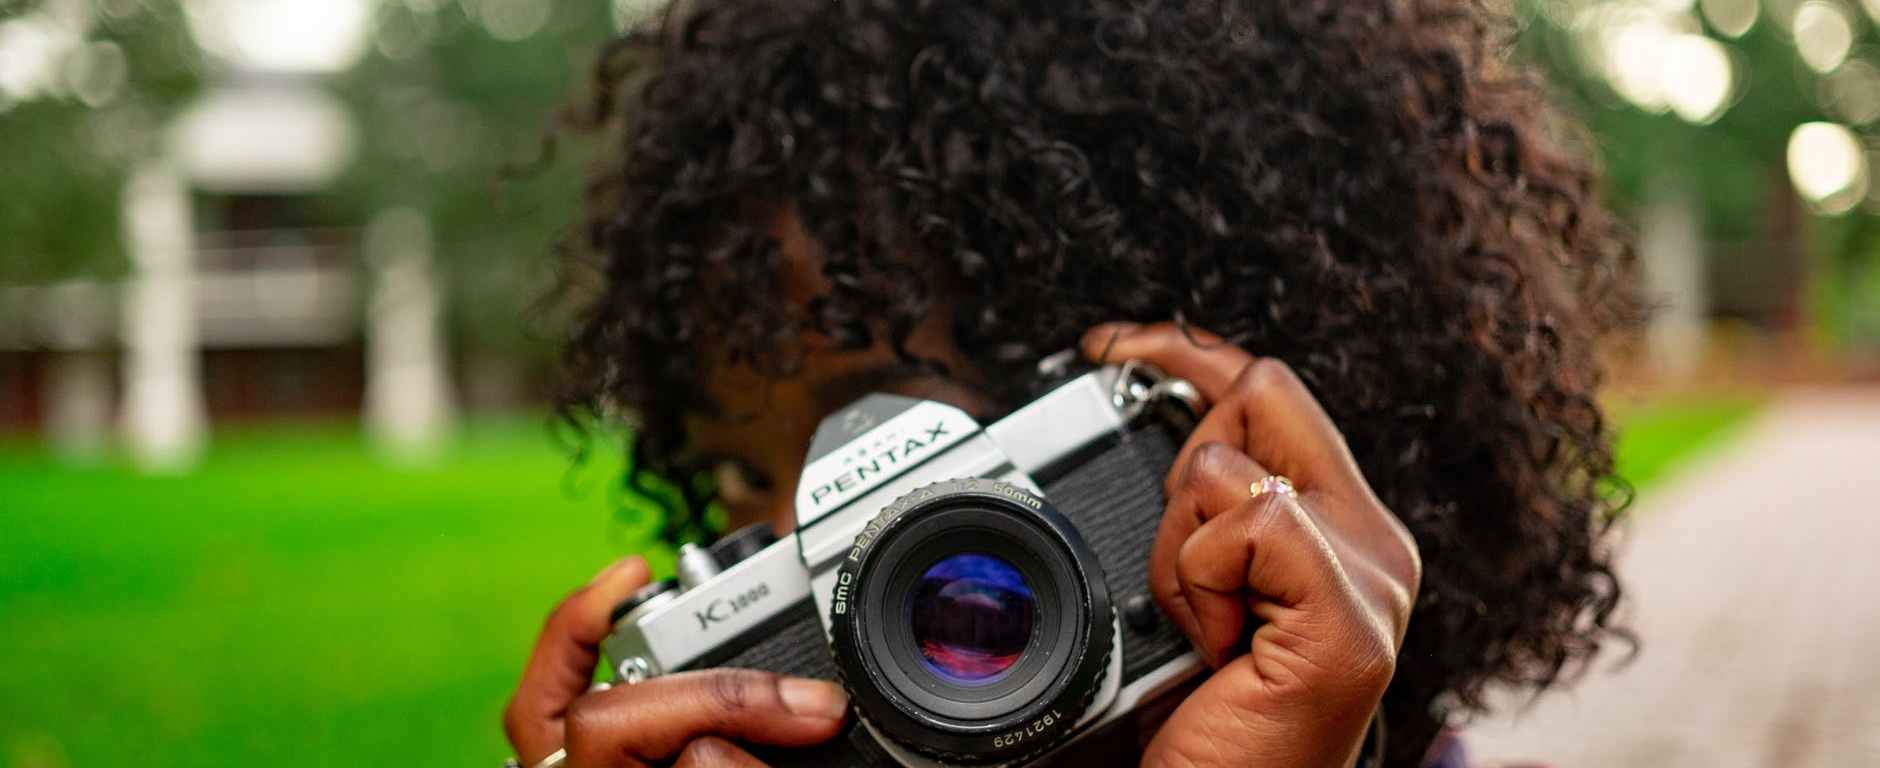 mujer tomando una foto con una cámara